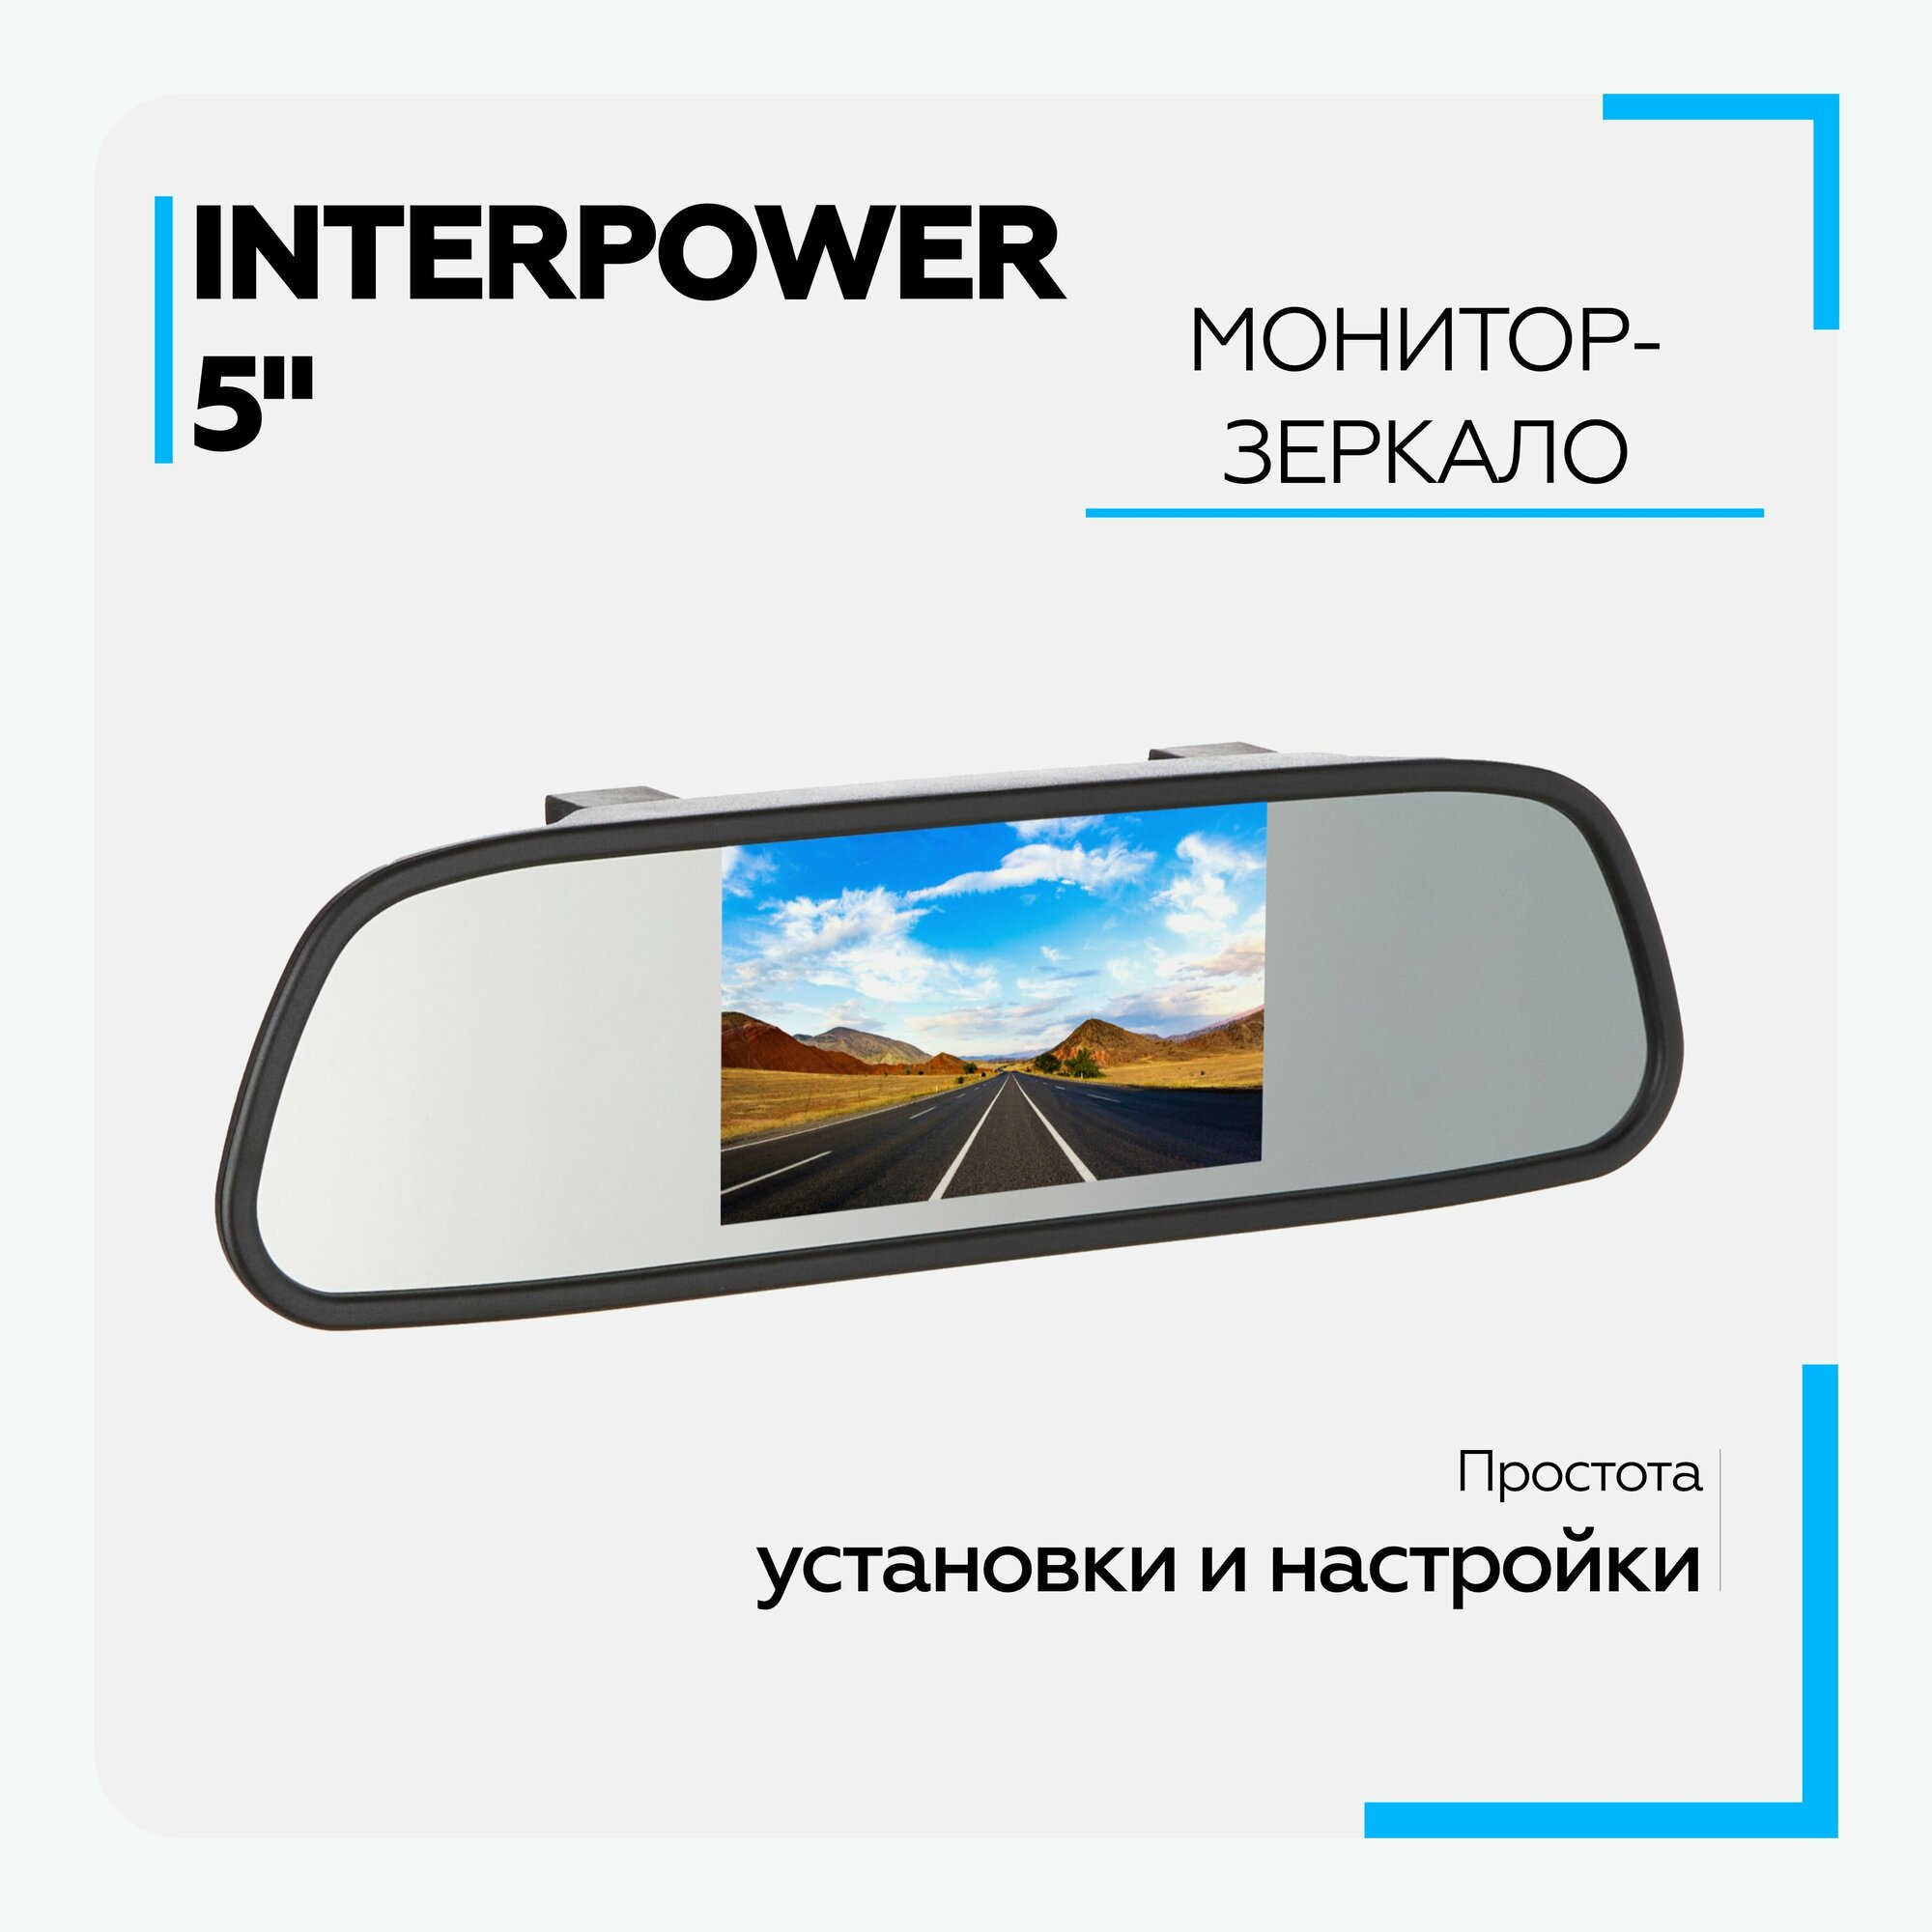 Зеркало заднего вида с монитором Interpower - 5" парковочный монитор для камеры заднего вида, автомобильный